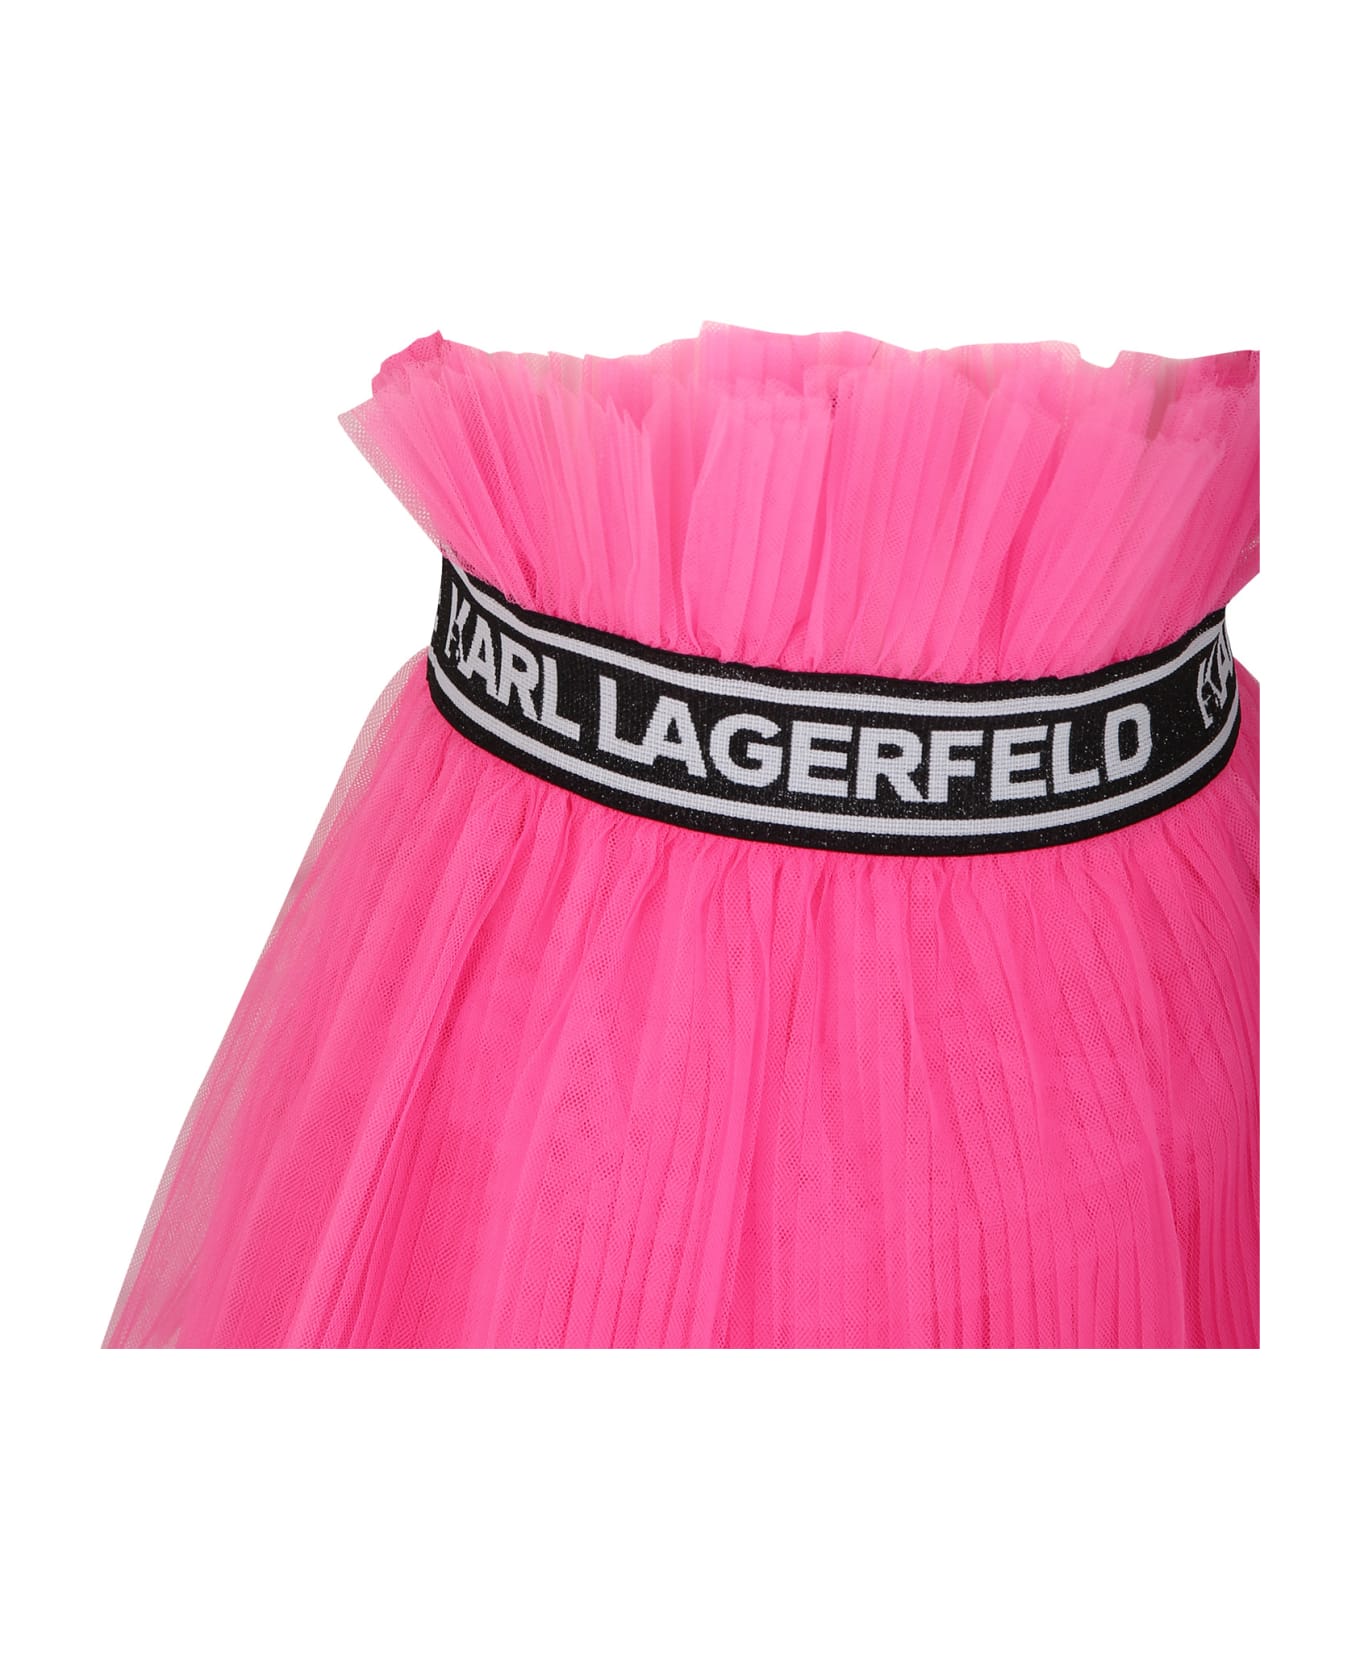 Karl Lagerfeld Kids Elegant Fuchsia Skirt For Girl - Fuchsia ボトムス